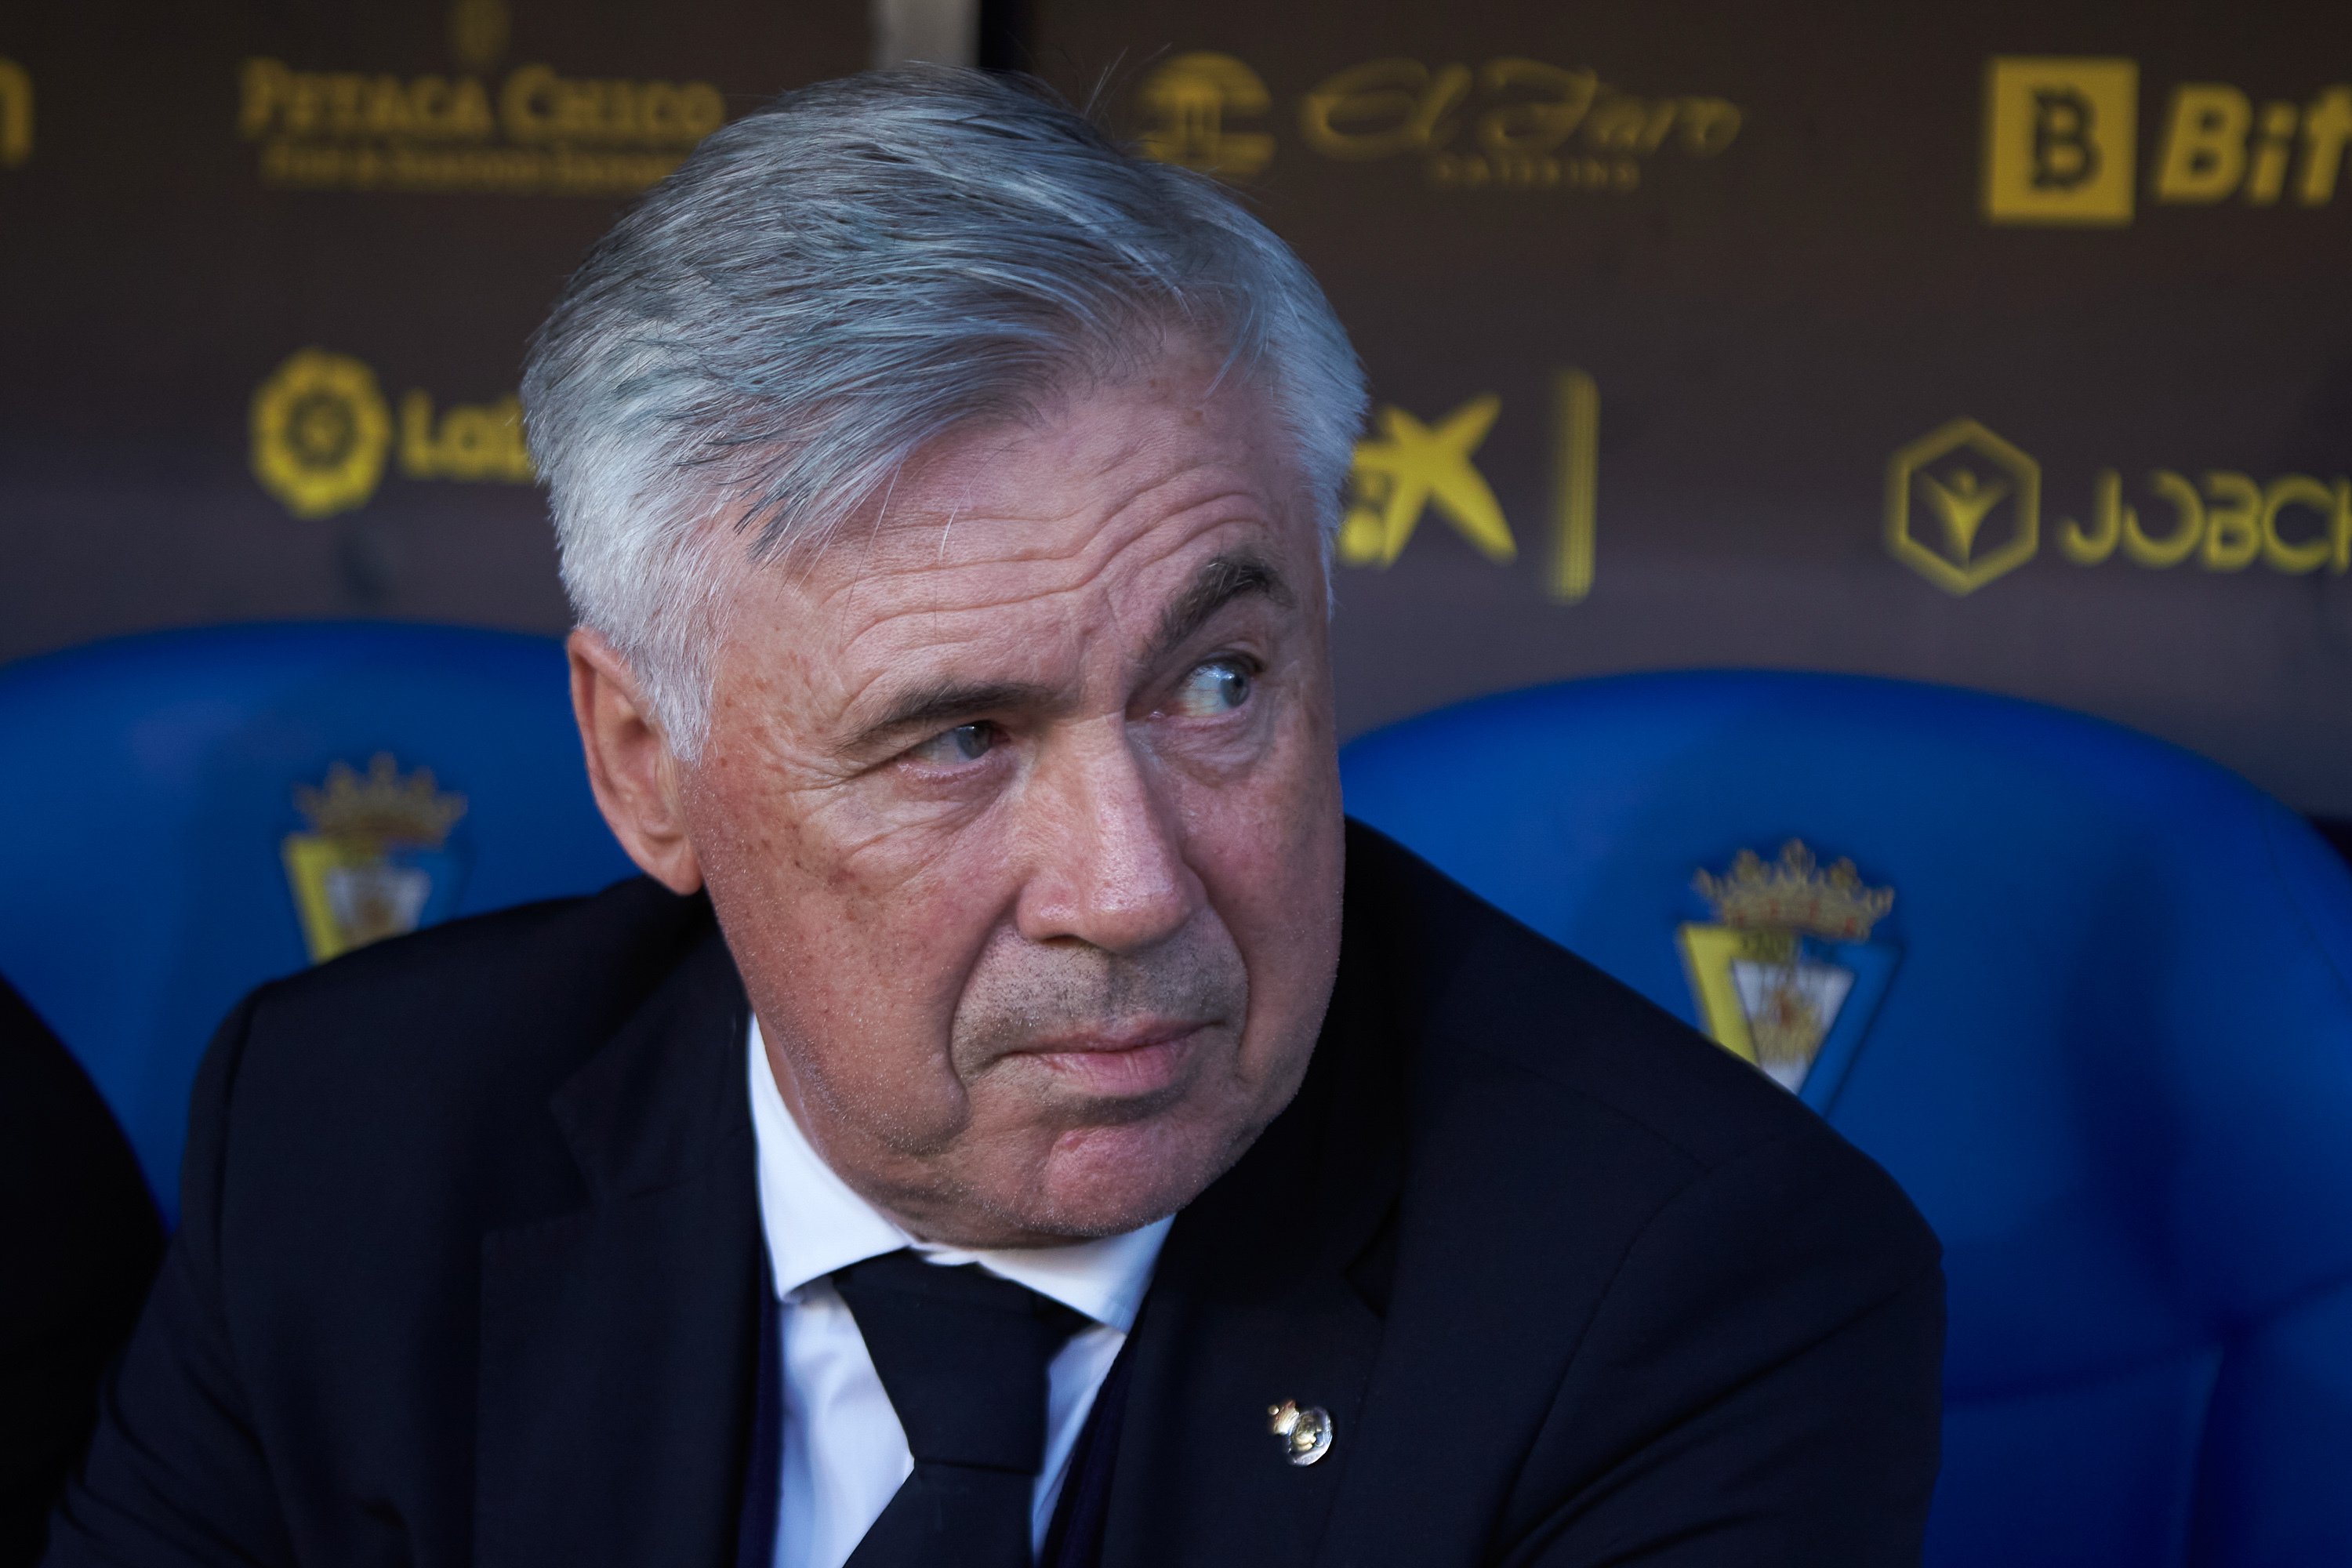 Comunica a Ancelotti que s'està plantejant anar-se'n i obre una crisi interna al Reial Madrid